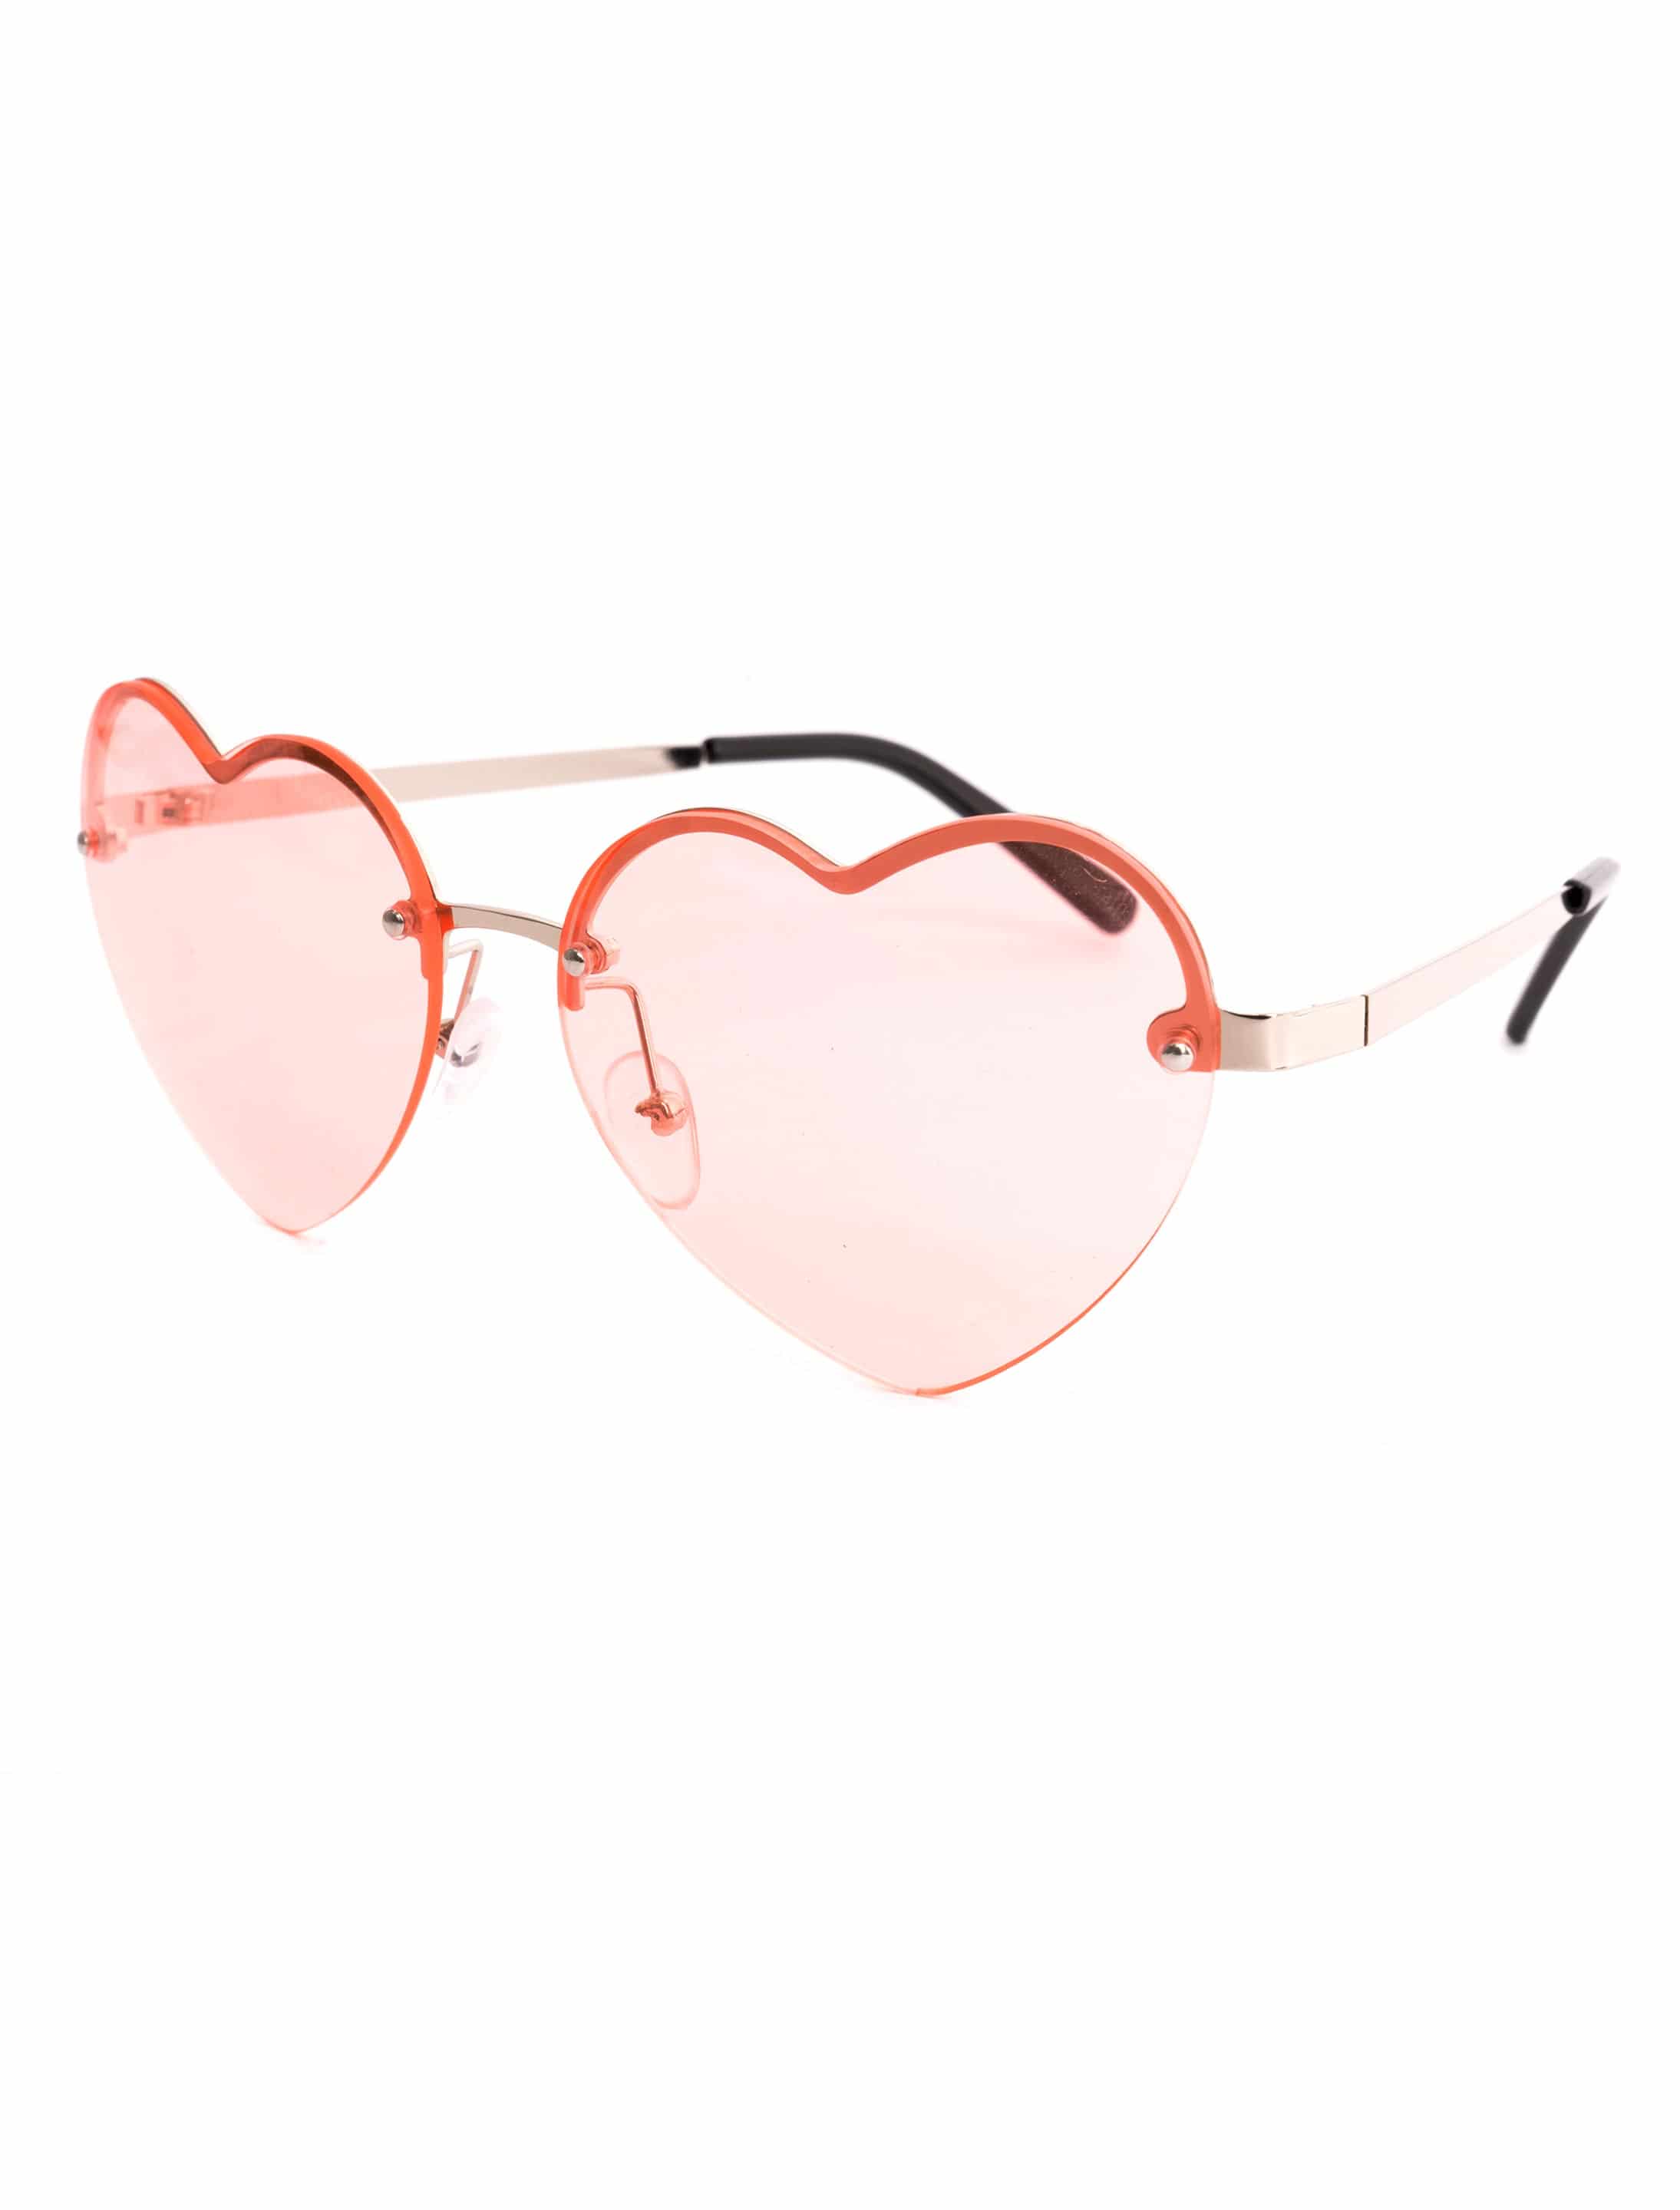 Brille Herz mit Gläsern rosa